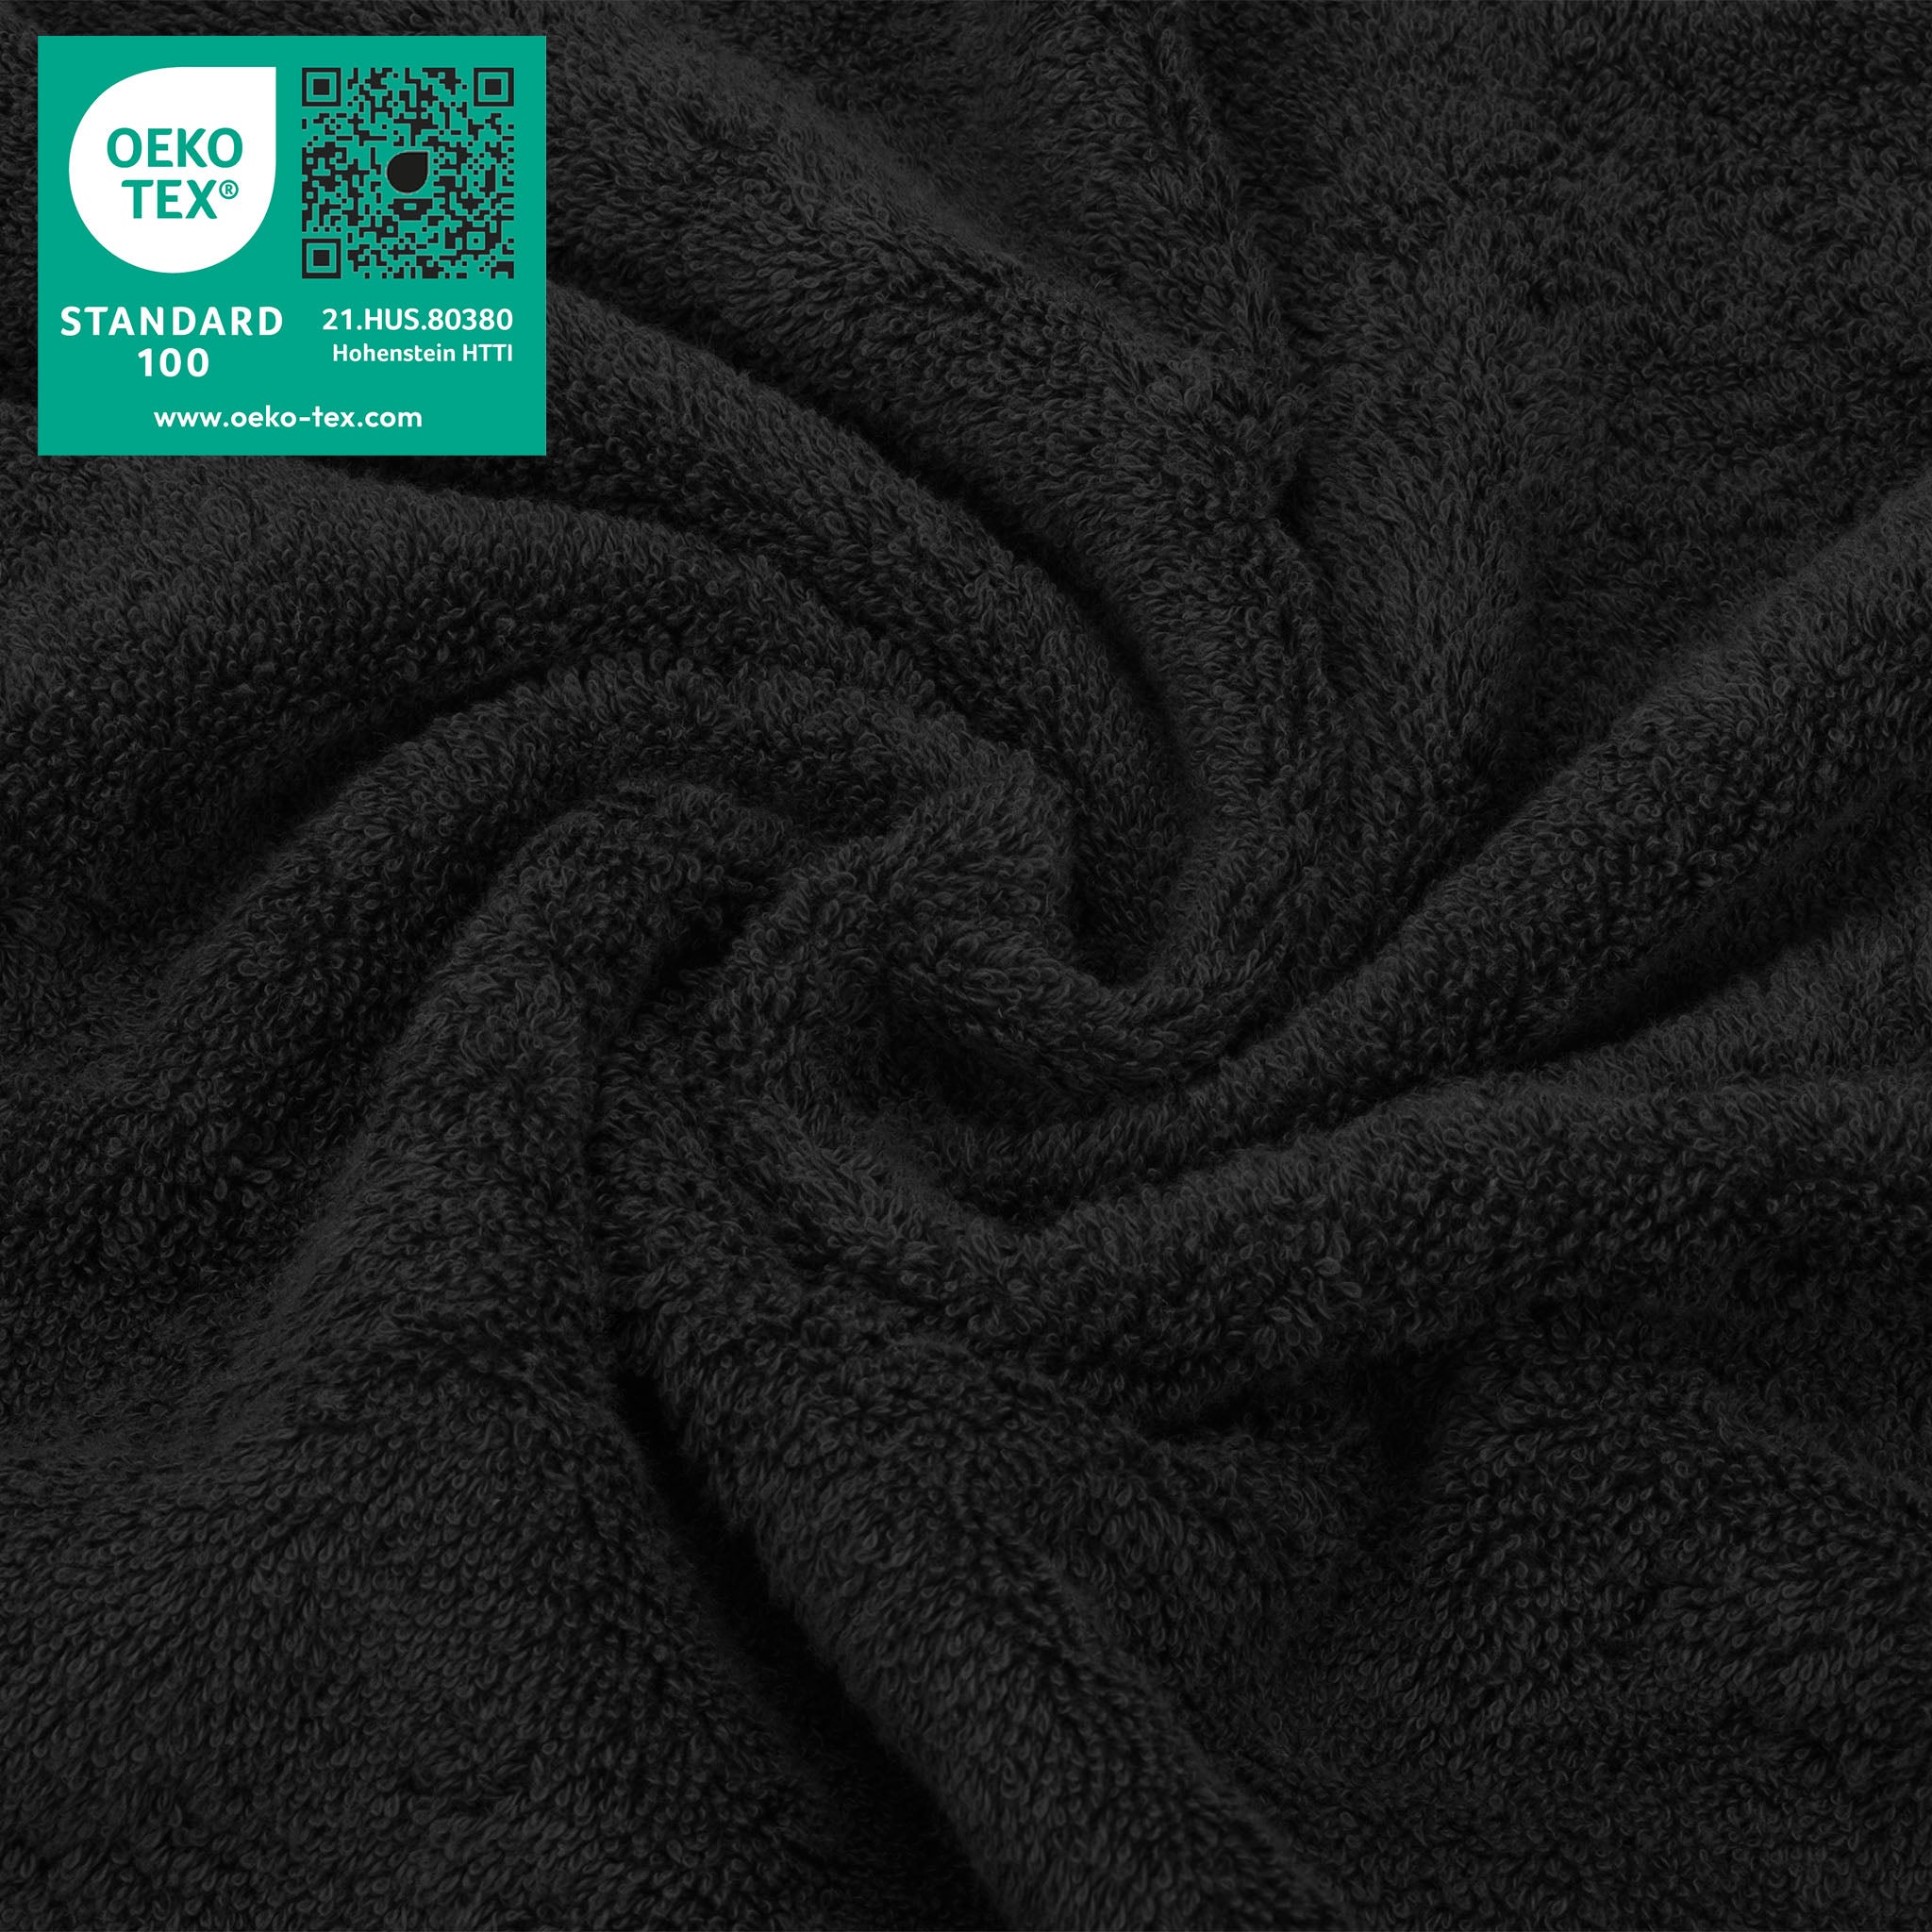 American Soft Linen 100% Turkish Cotton 4 Piece Washcloth Set black-3